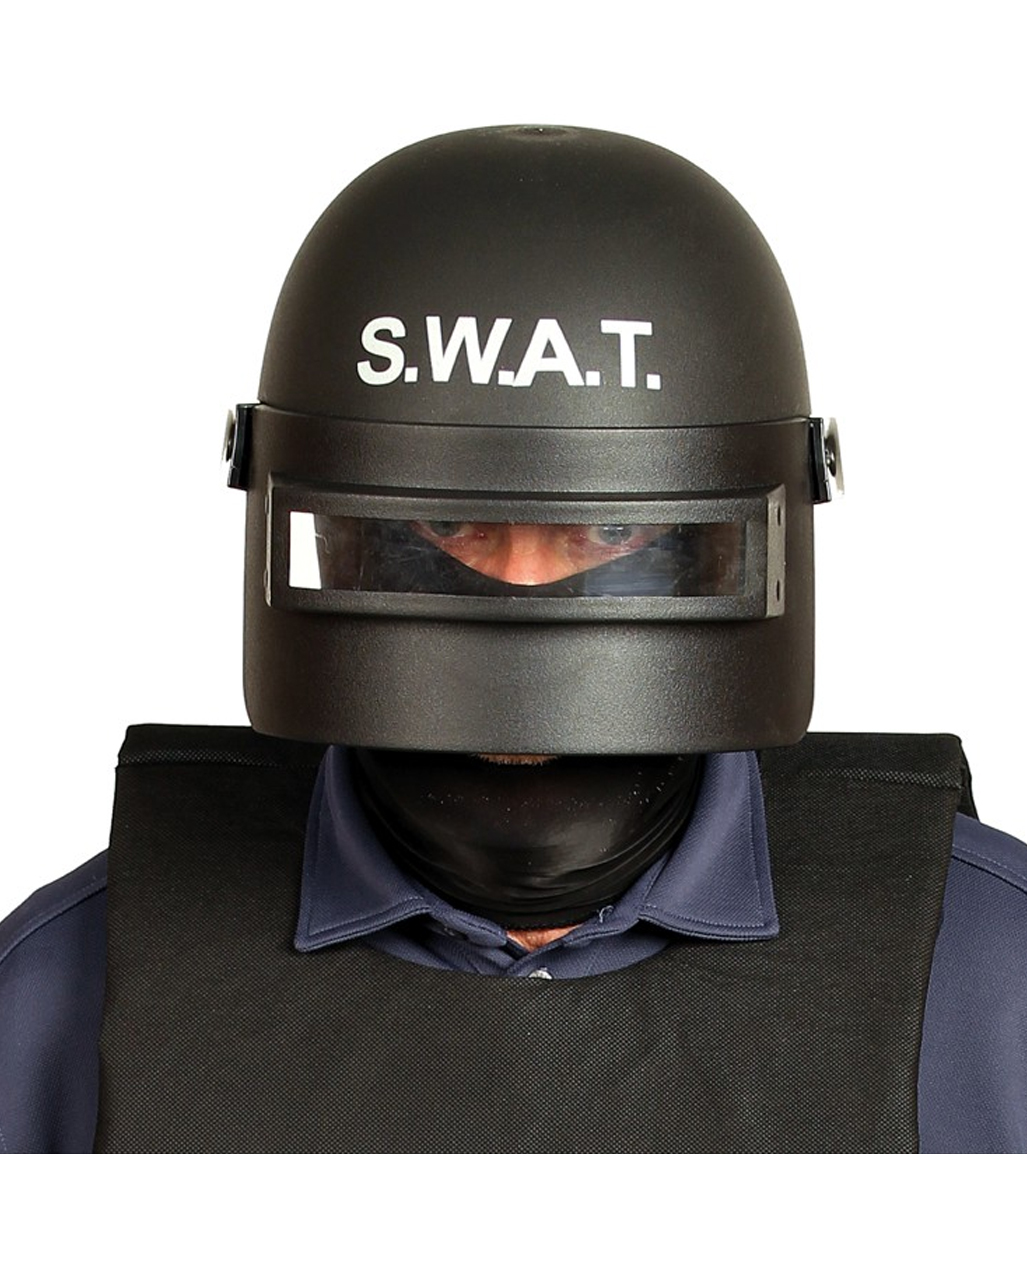 swat helm fuer erwachsene swat helmet for adults polizeikostuem polizeihelm 53396 01